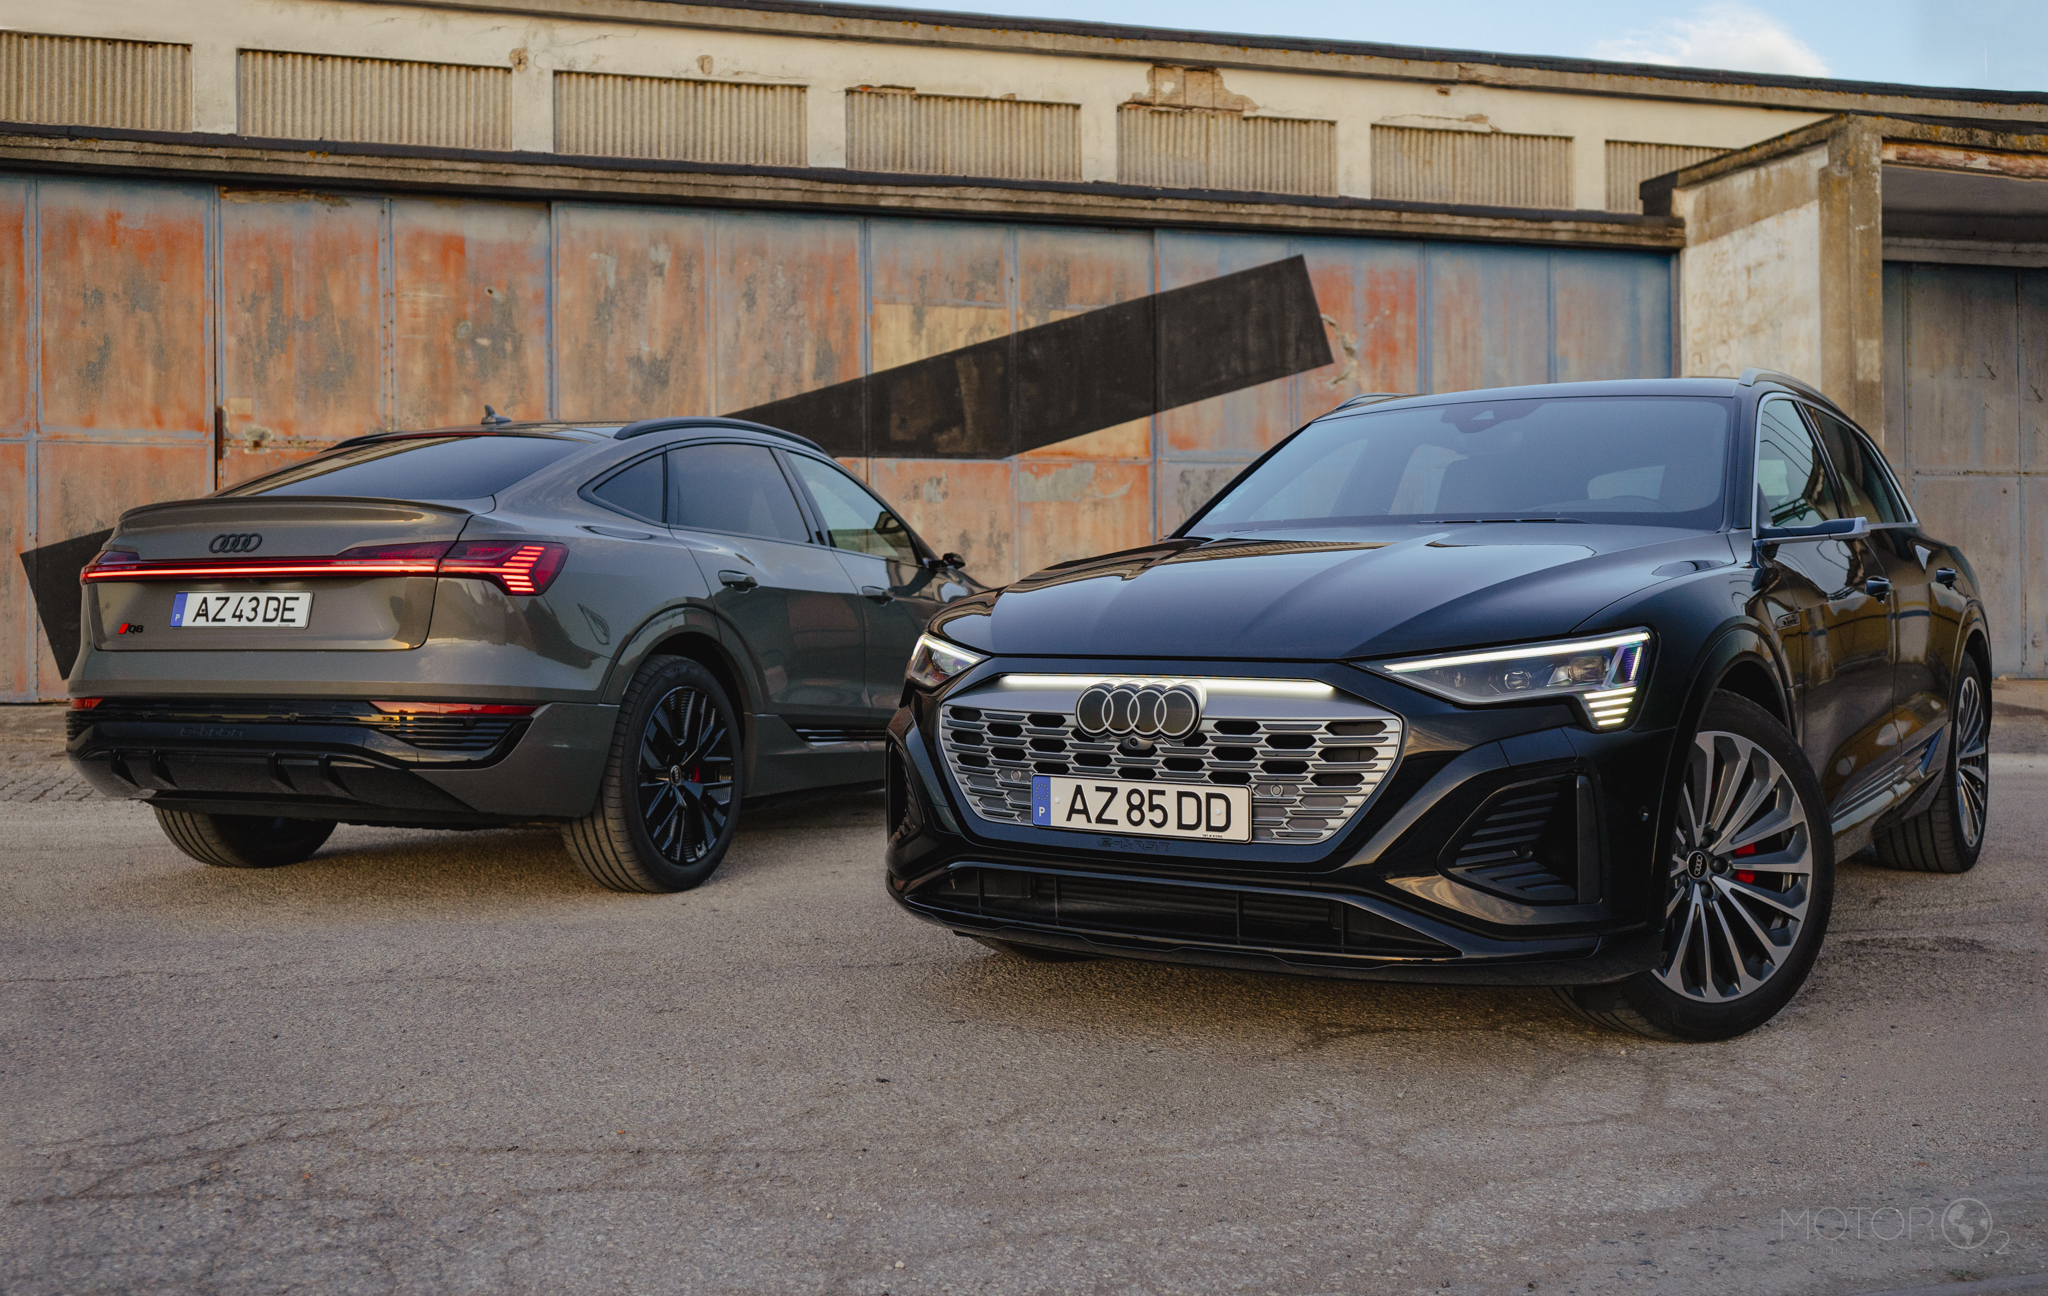 Especial Audi: Q8 e-tron e Q8 e-tron Sportback em teste